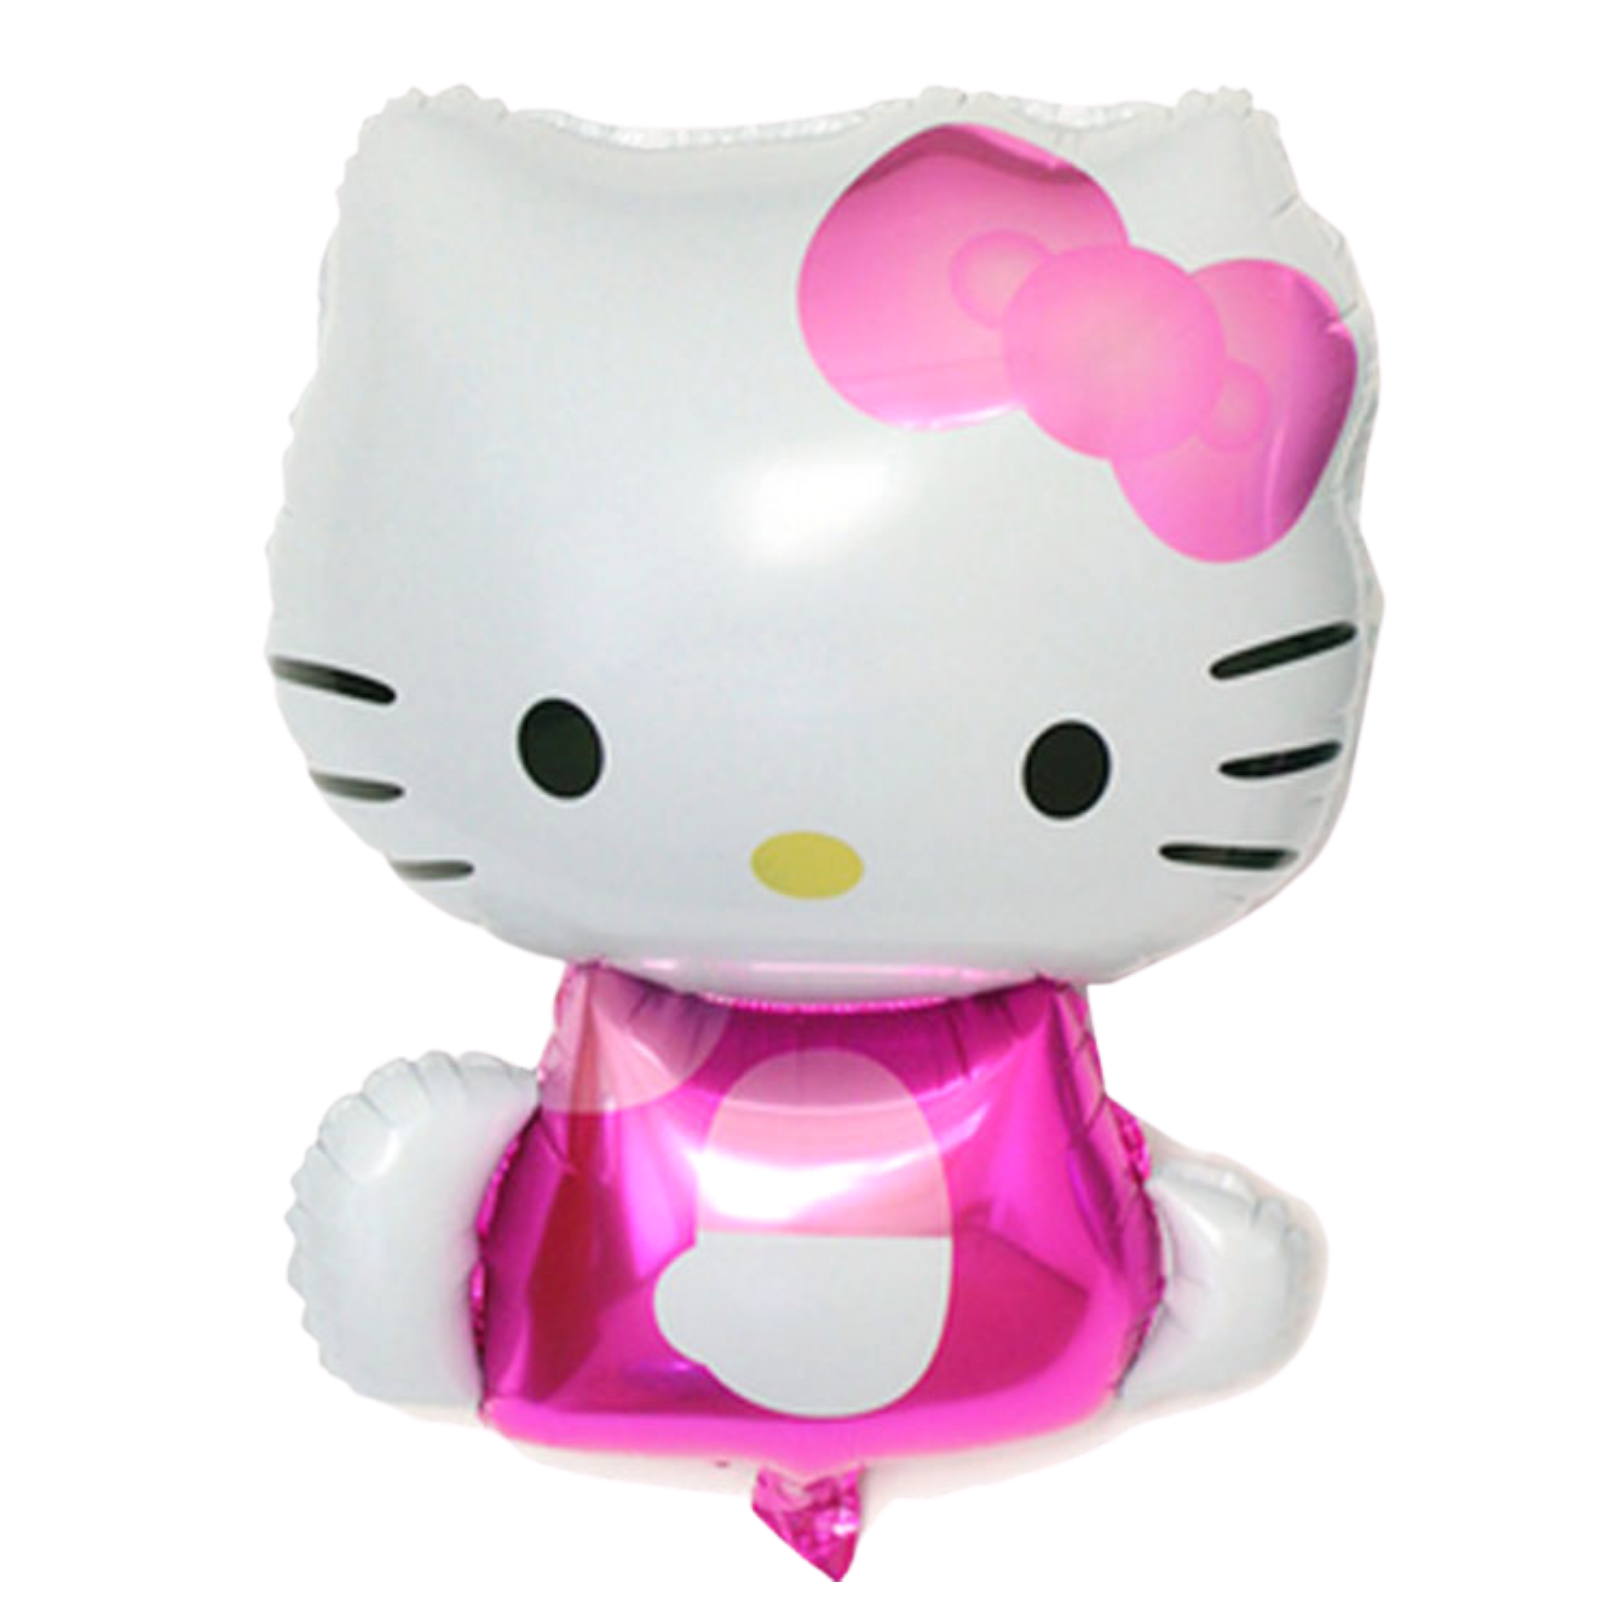 Sitting Hello Kitty Balloon | Balloon Party Singapore - Hello Kitty Stuff